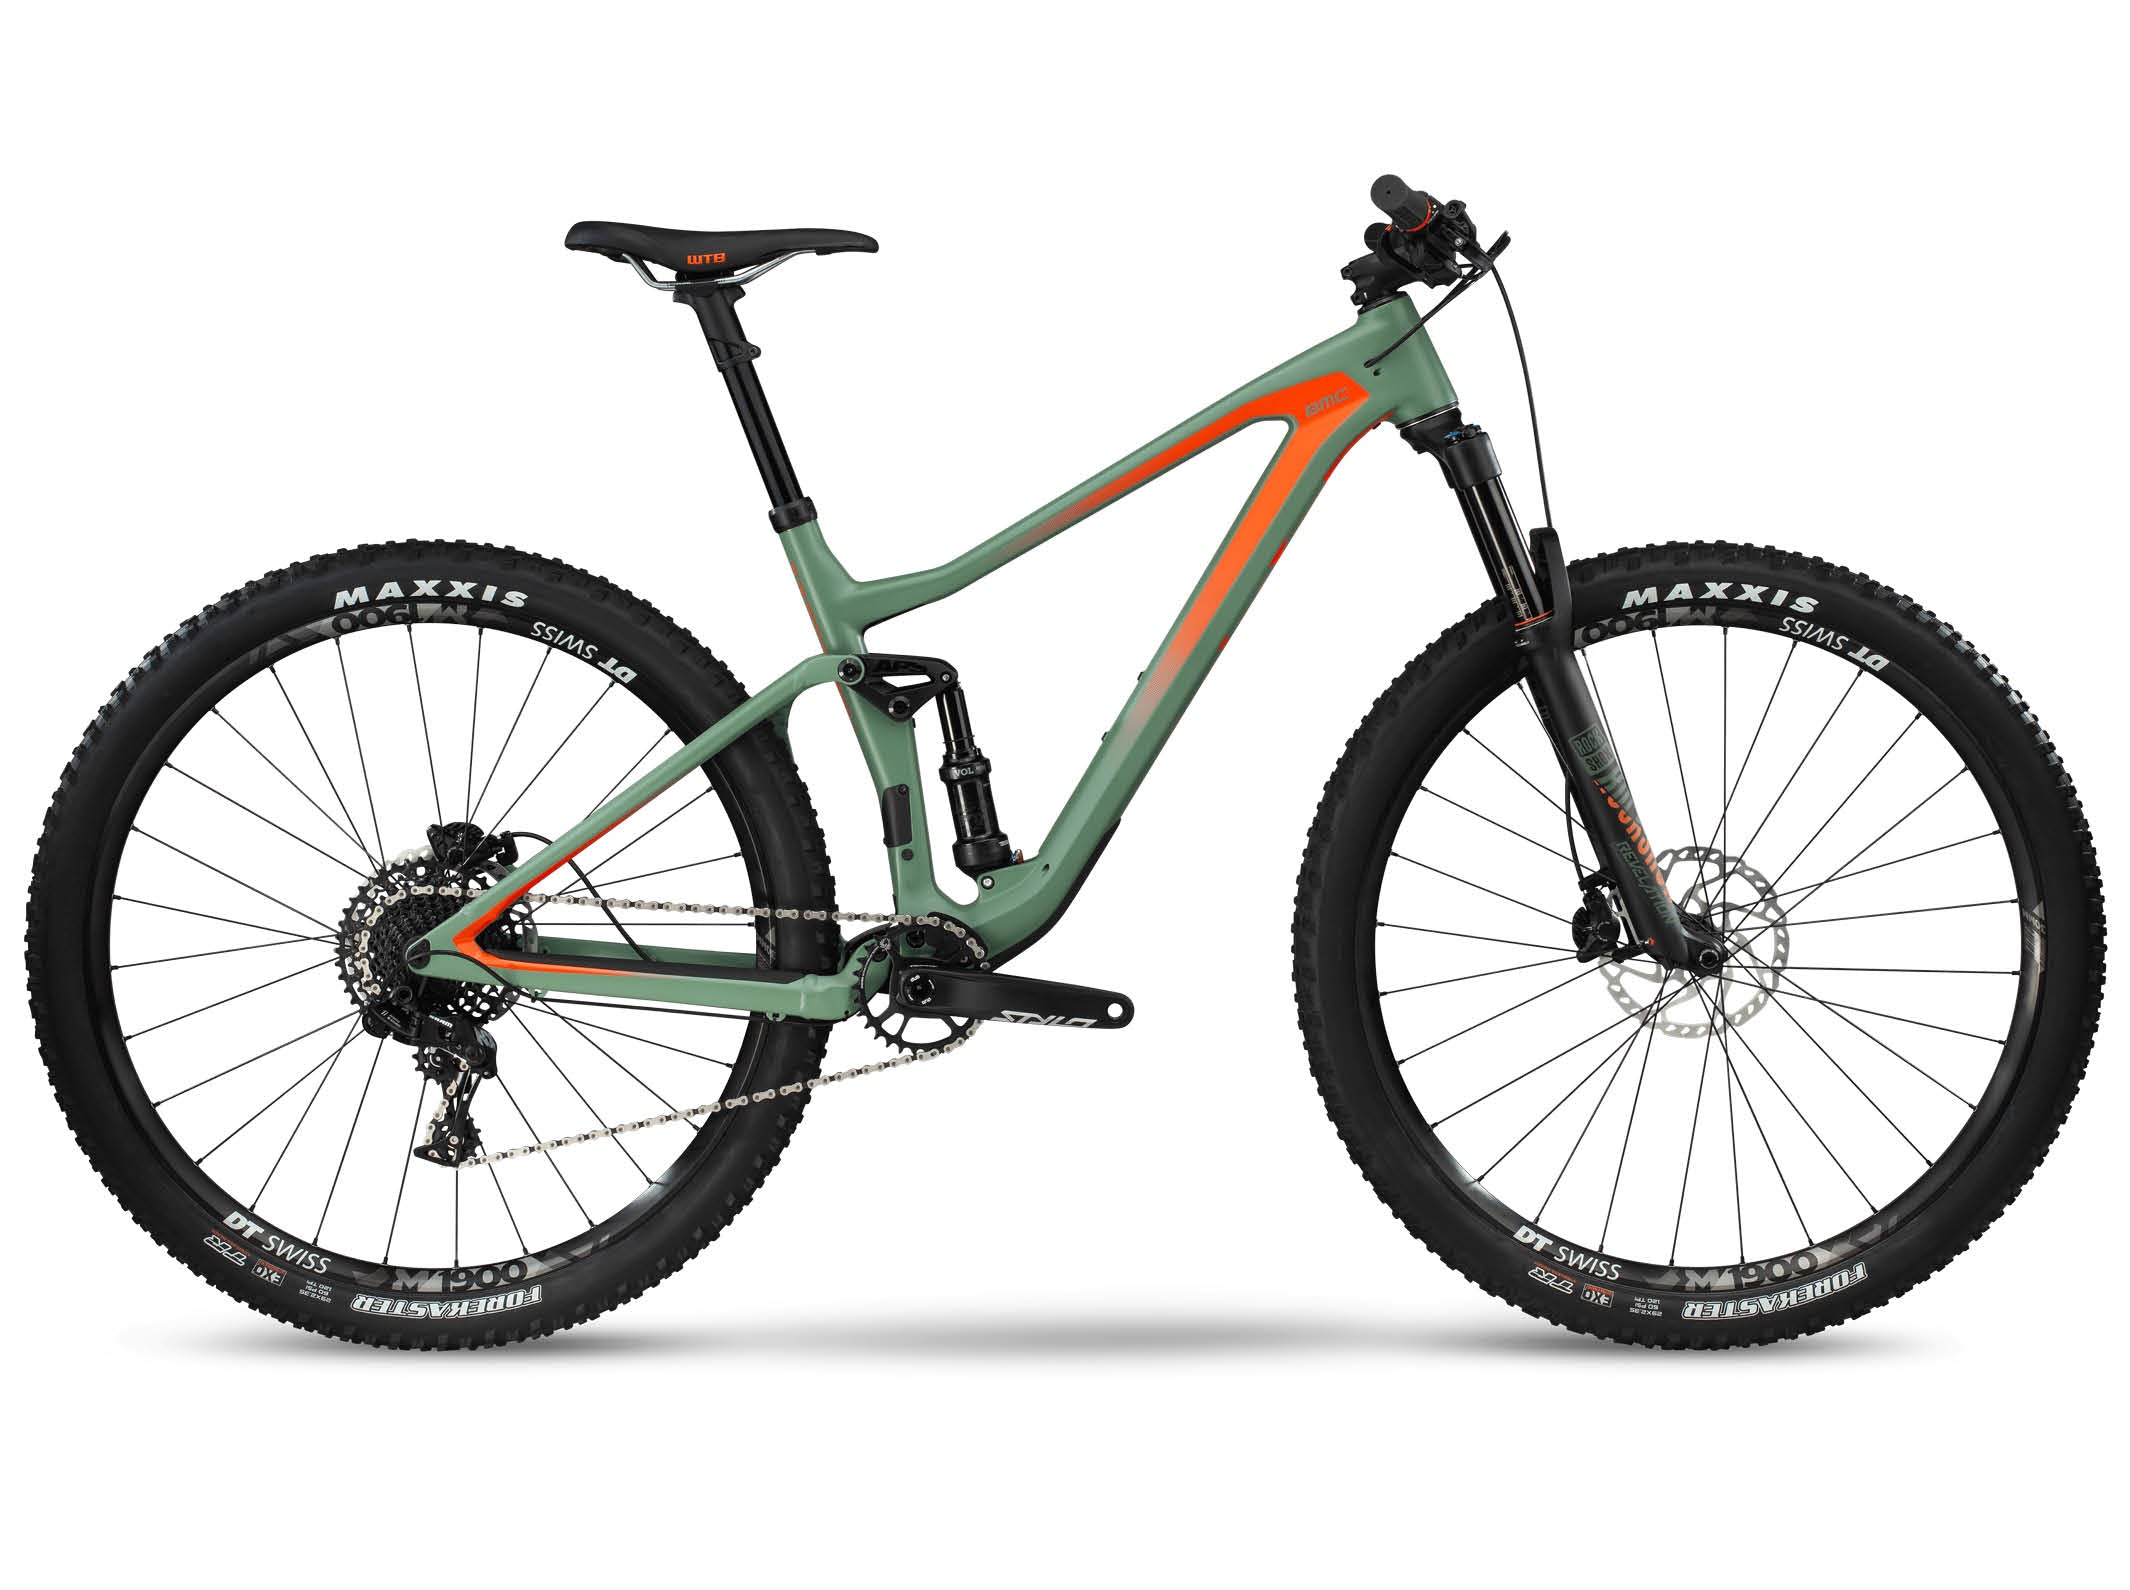 Speedfox 02 TWO | BMC | bikes | Mountain, Mountain | Trail